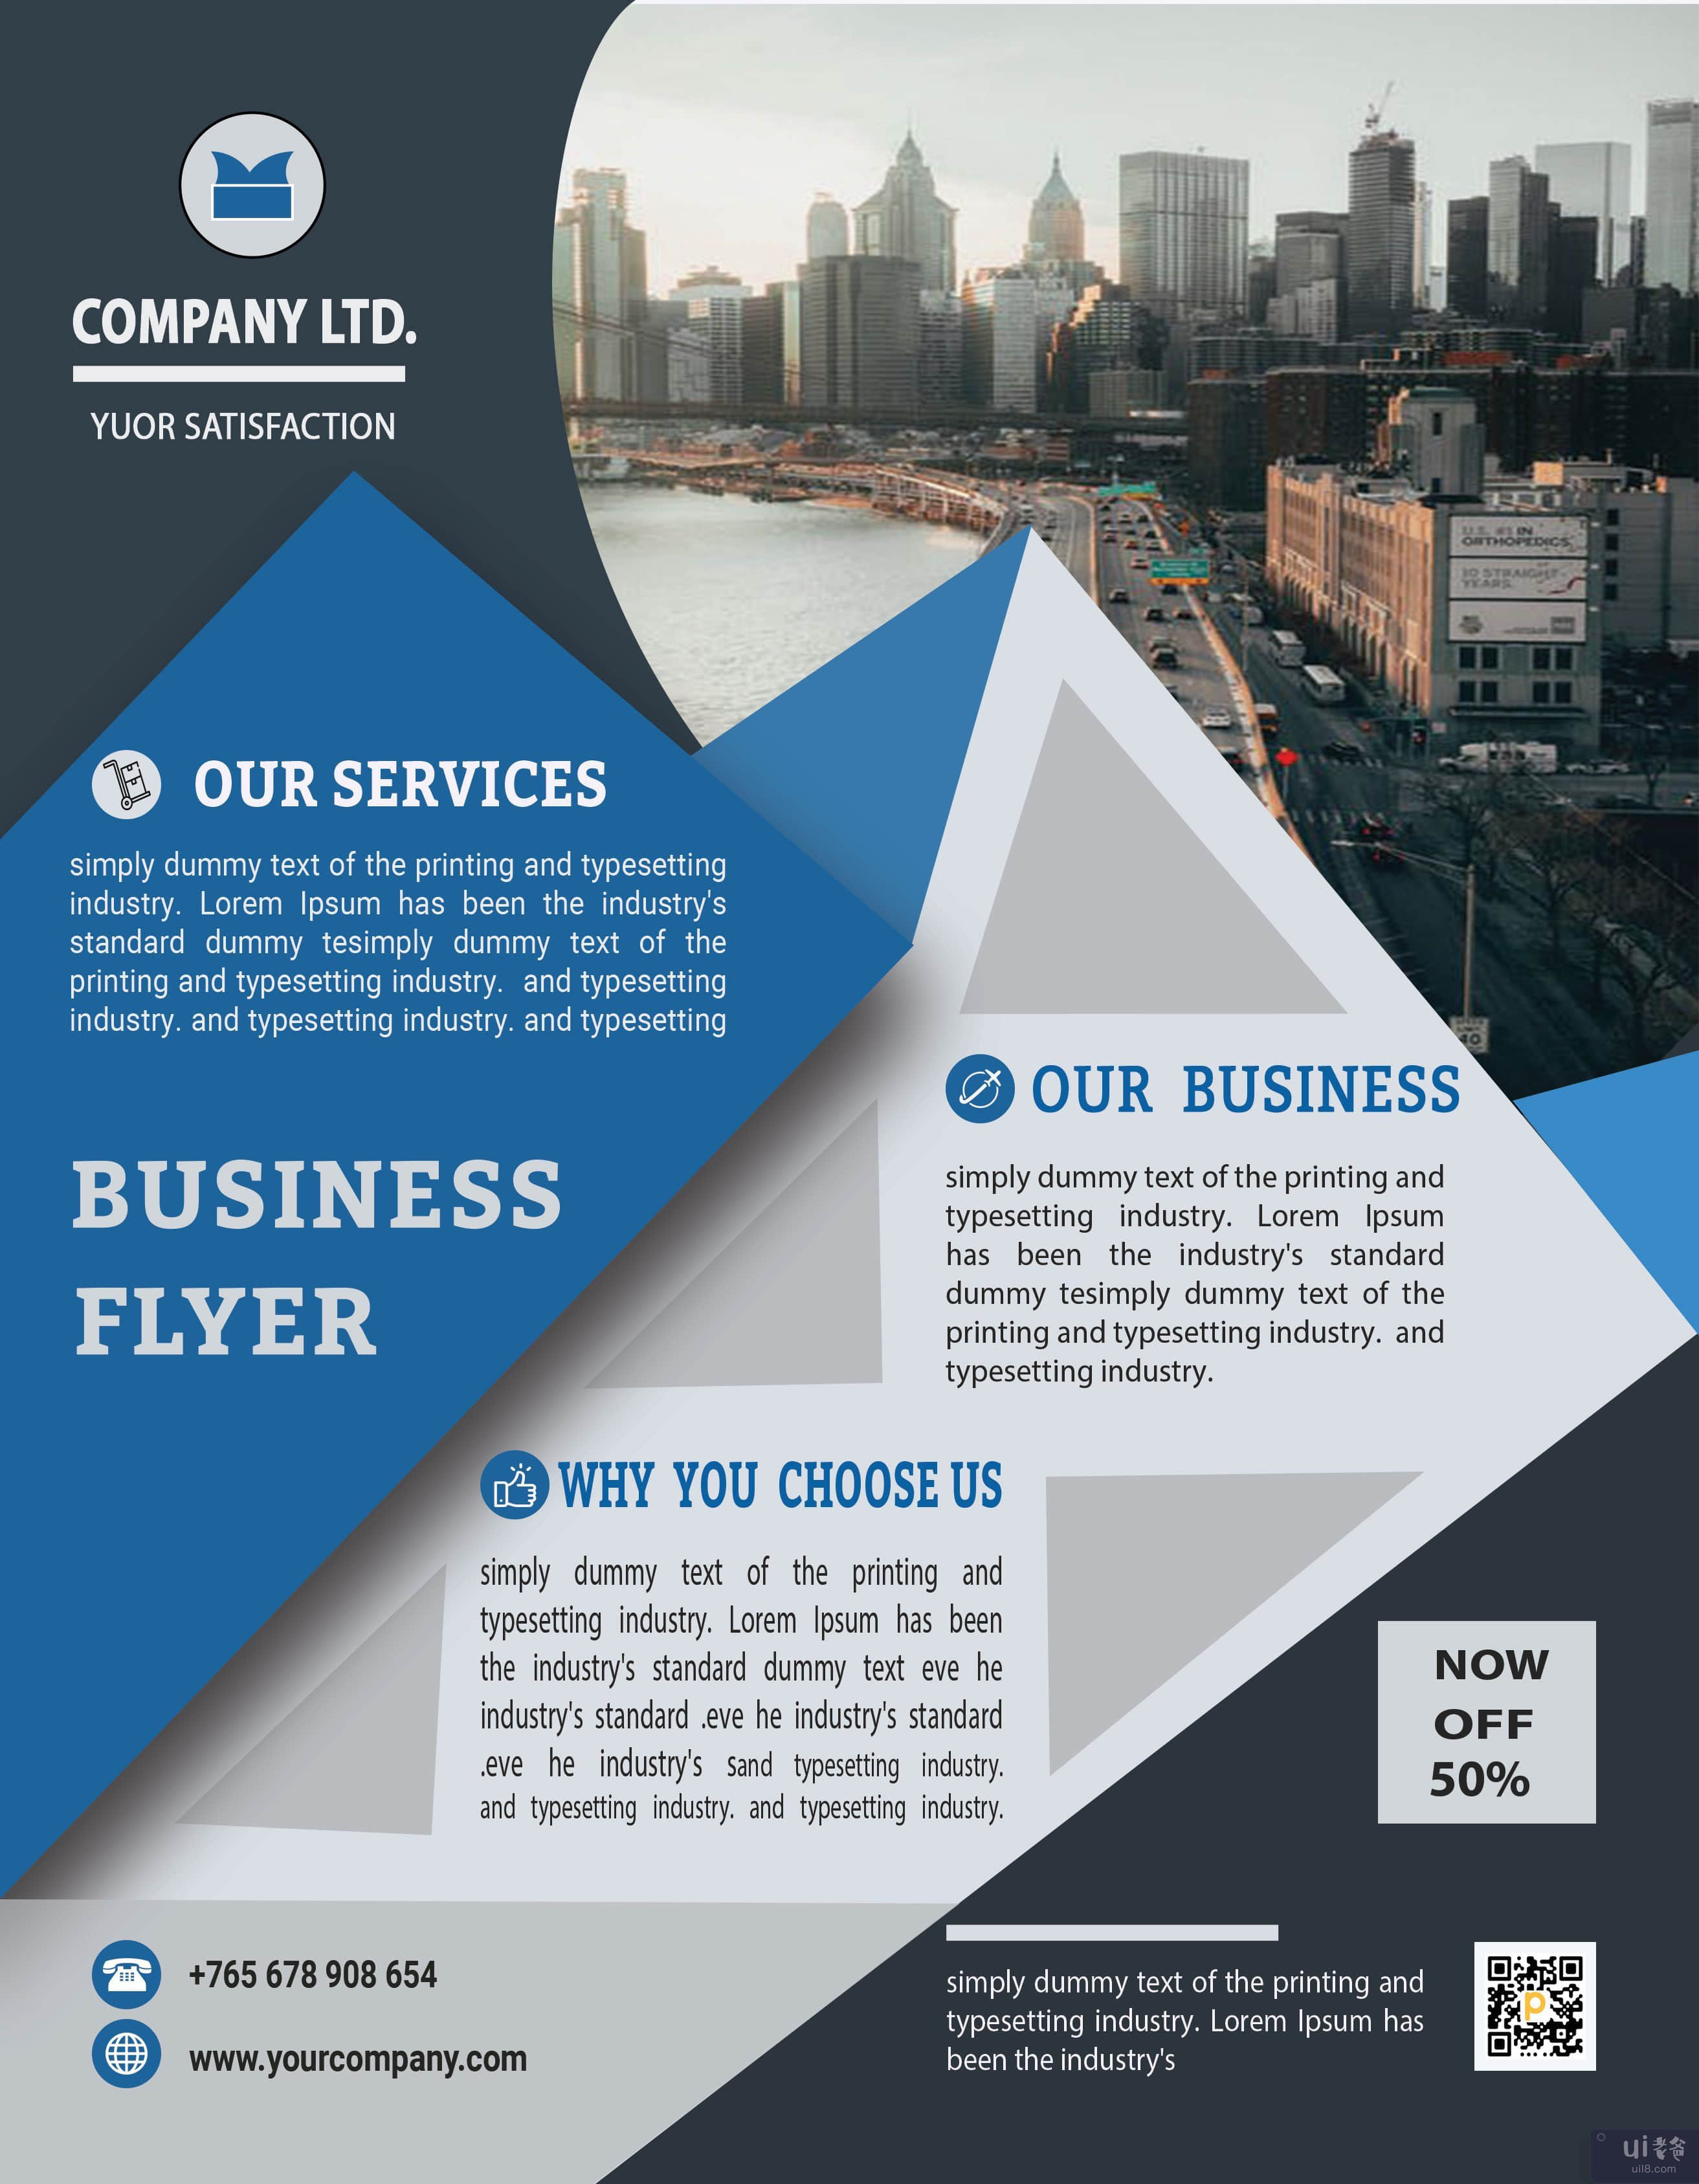 蓝色时尚商业传单模板(Blue Stylish Business Flyer Template)插图2